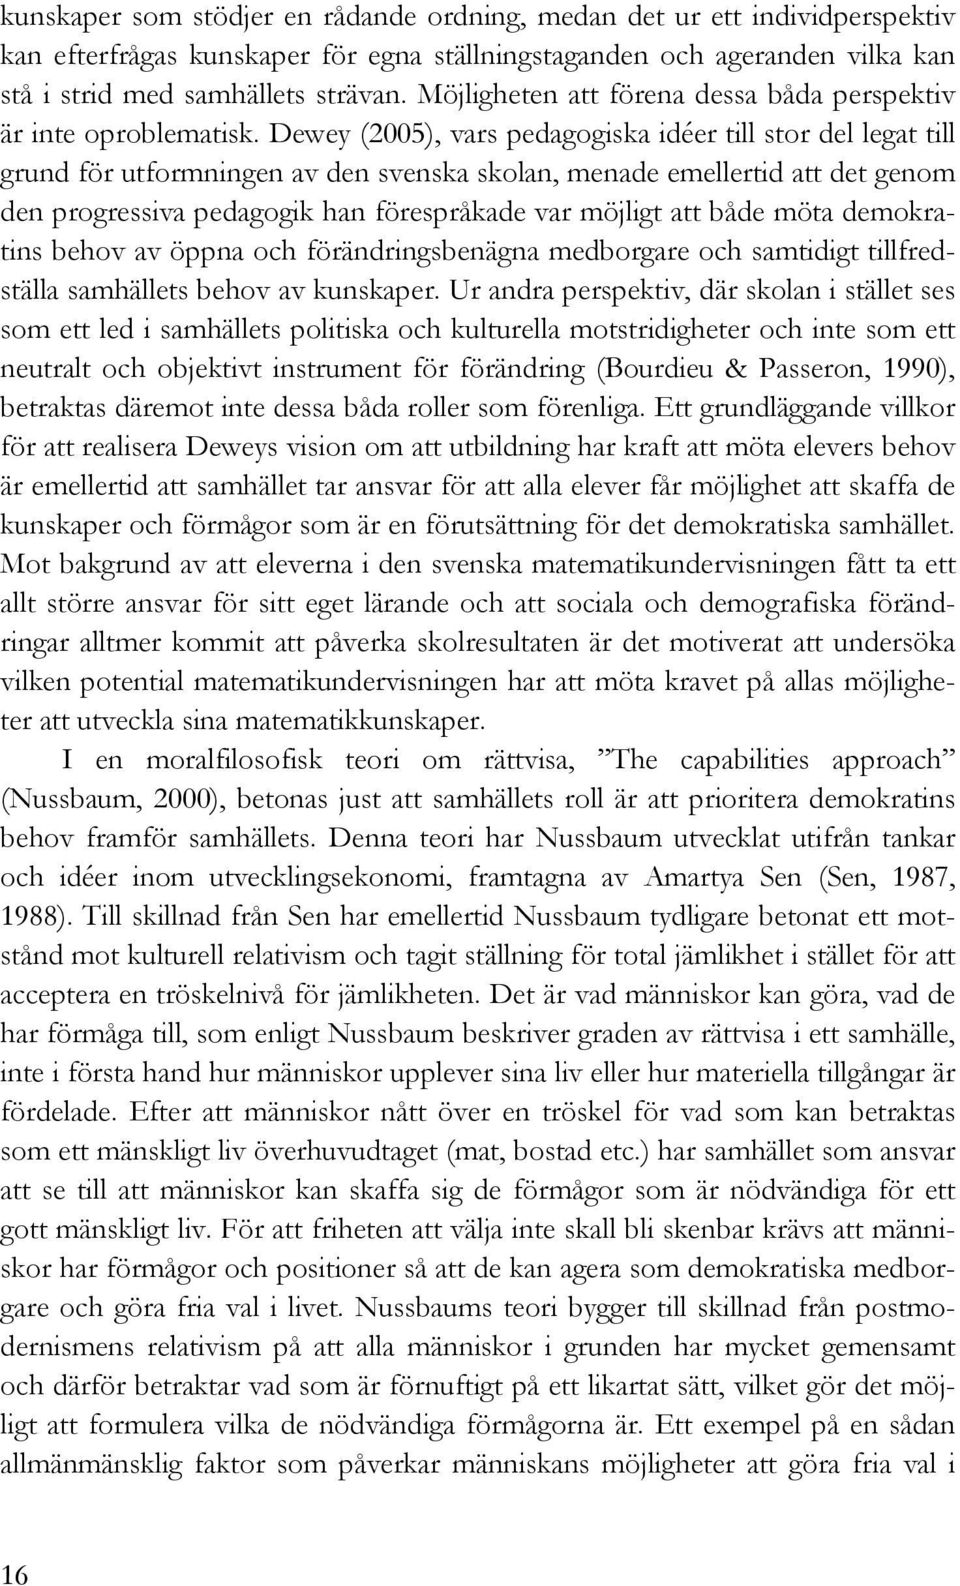 Dewey (2005), vars pedagogiska idéer till stor del legat till grund för utformningen av den svenska skolan, menade emellertid att det genom den progressiva pedagogik han förespråkade var möjligt att